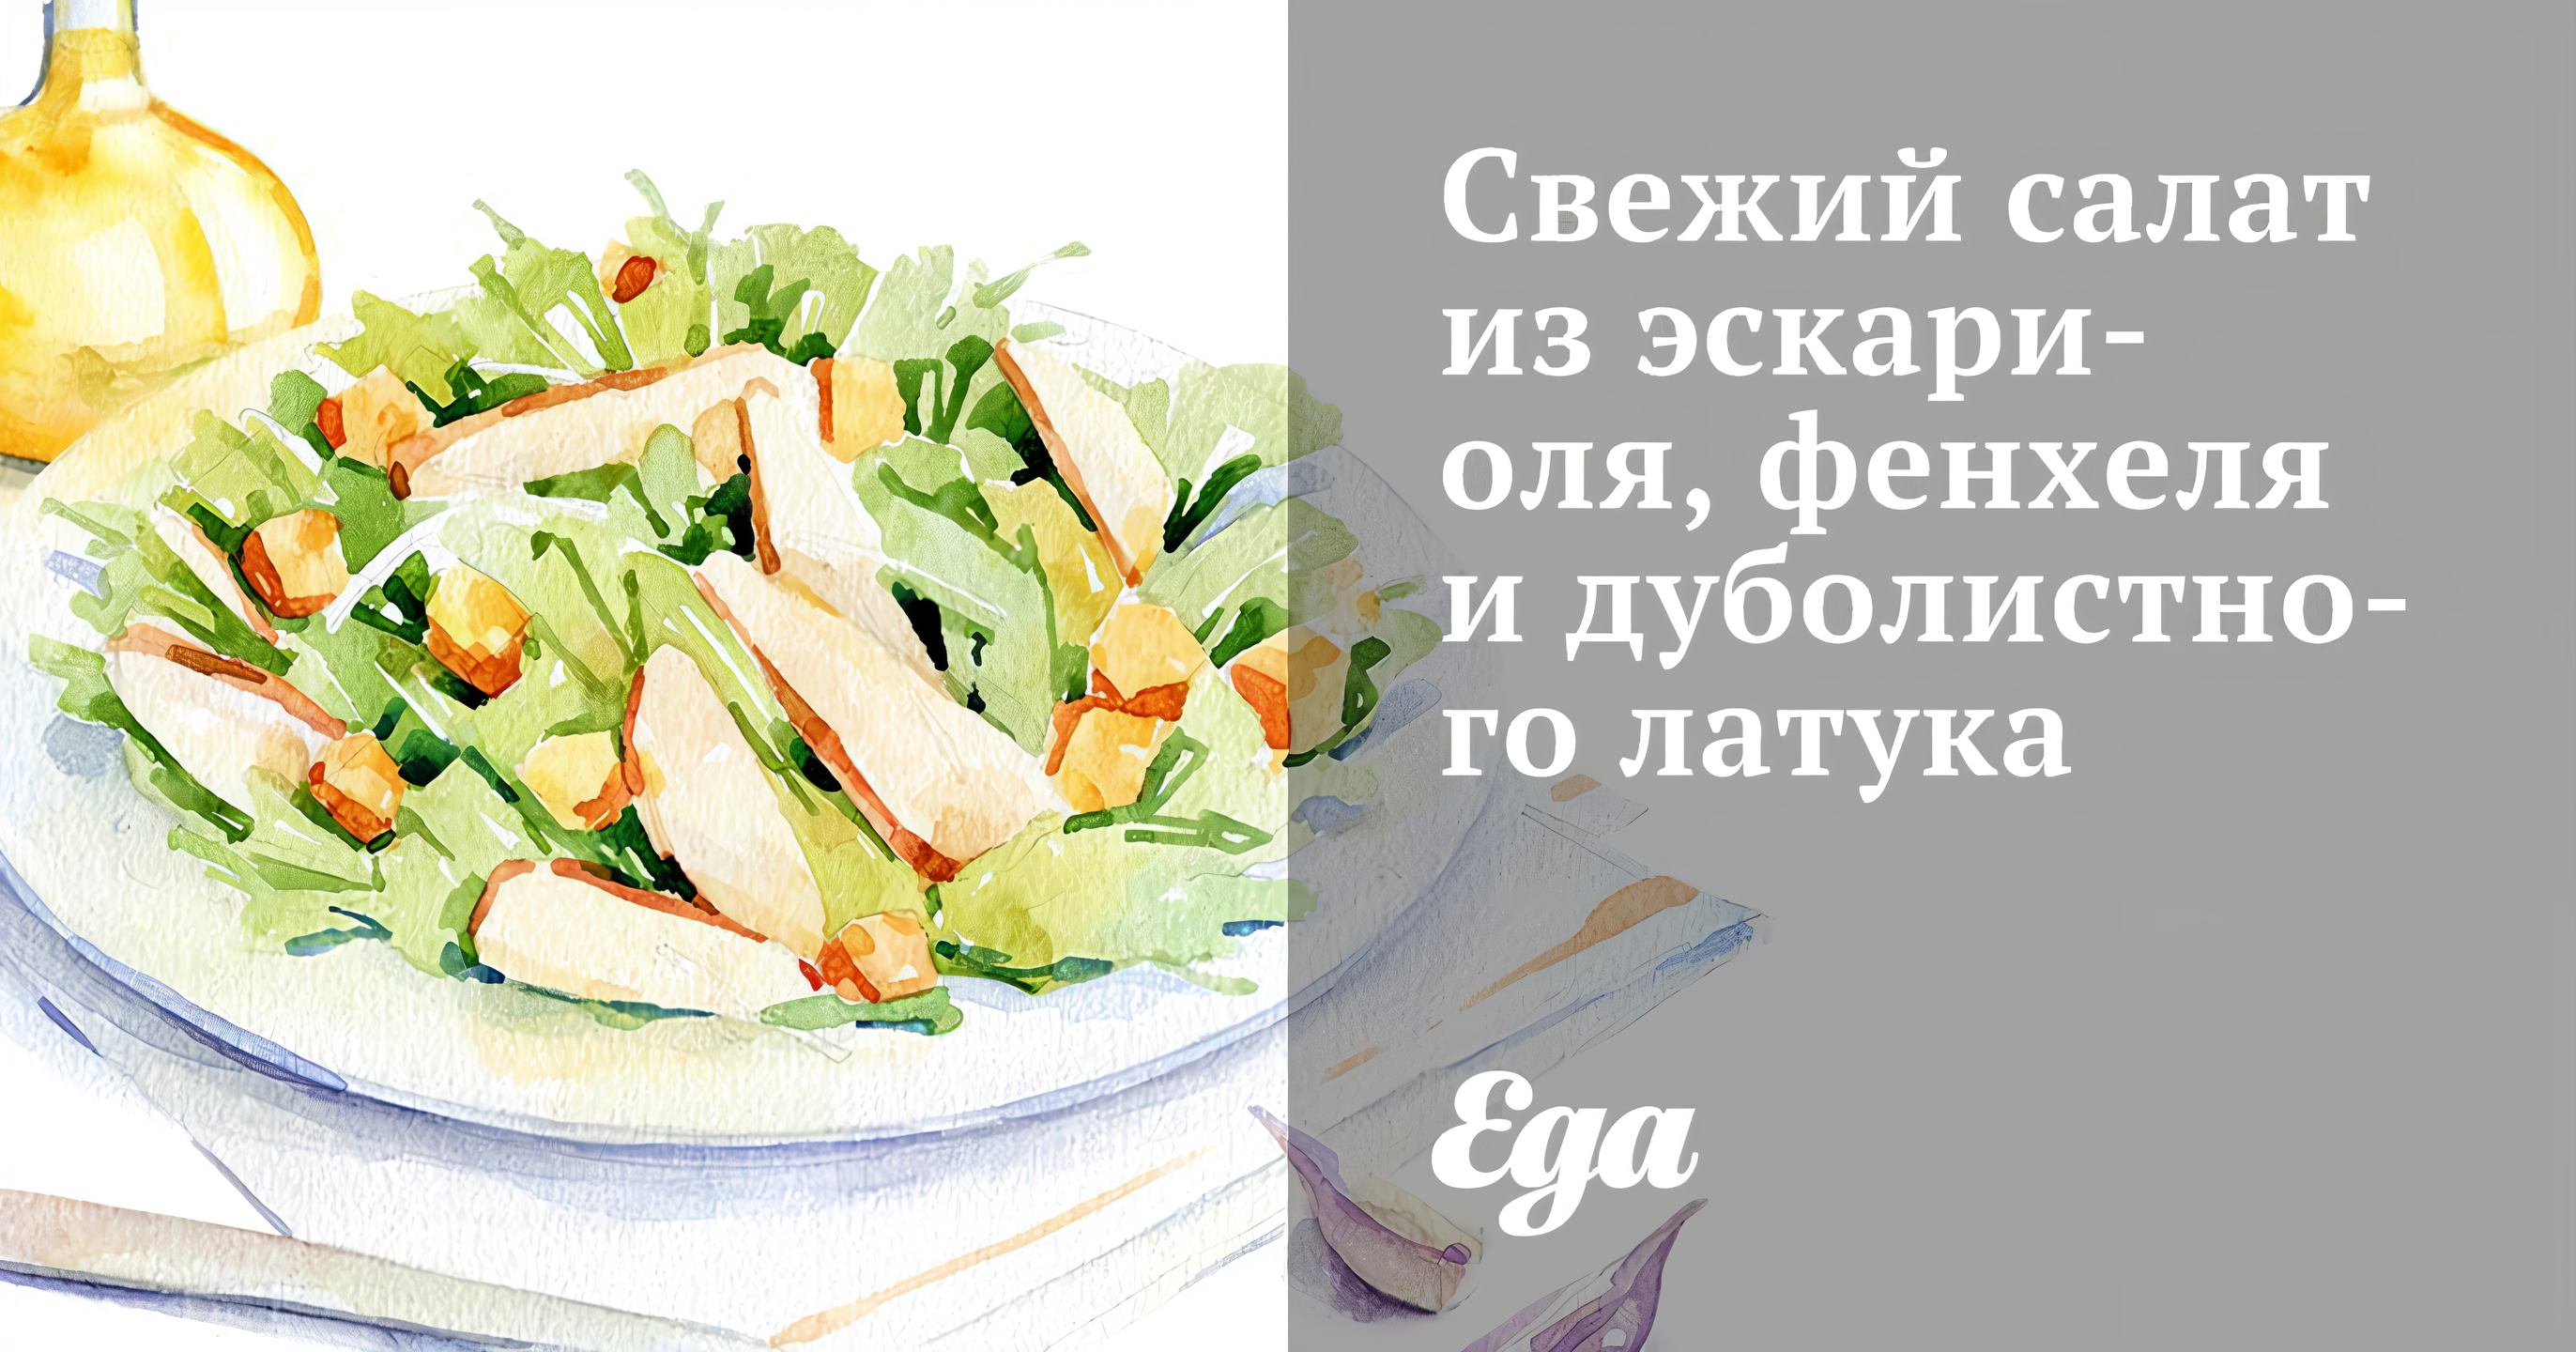 Свежий салат из эскариоля, фенхеля и дуболистного латука